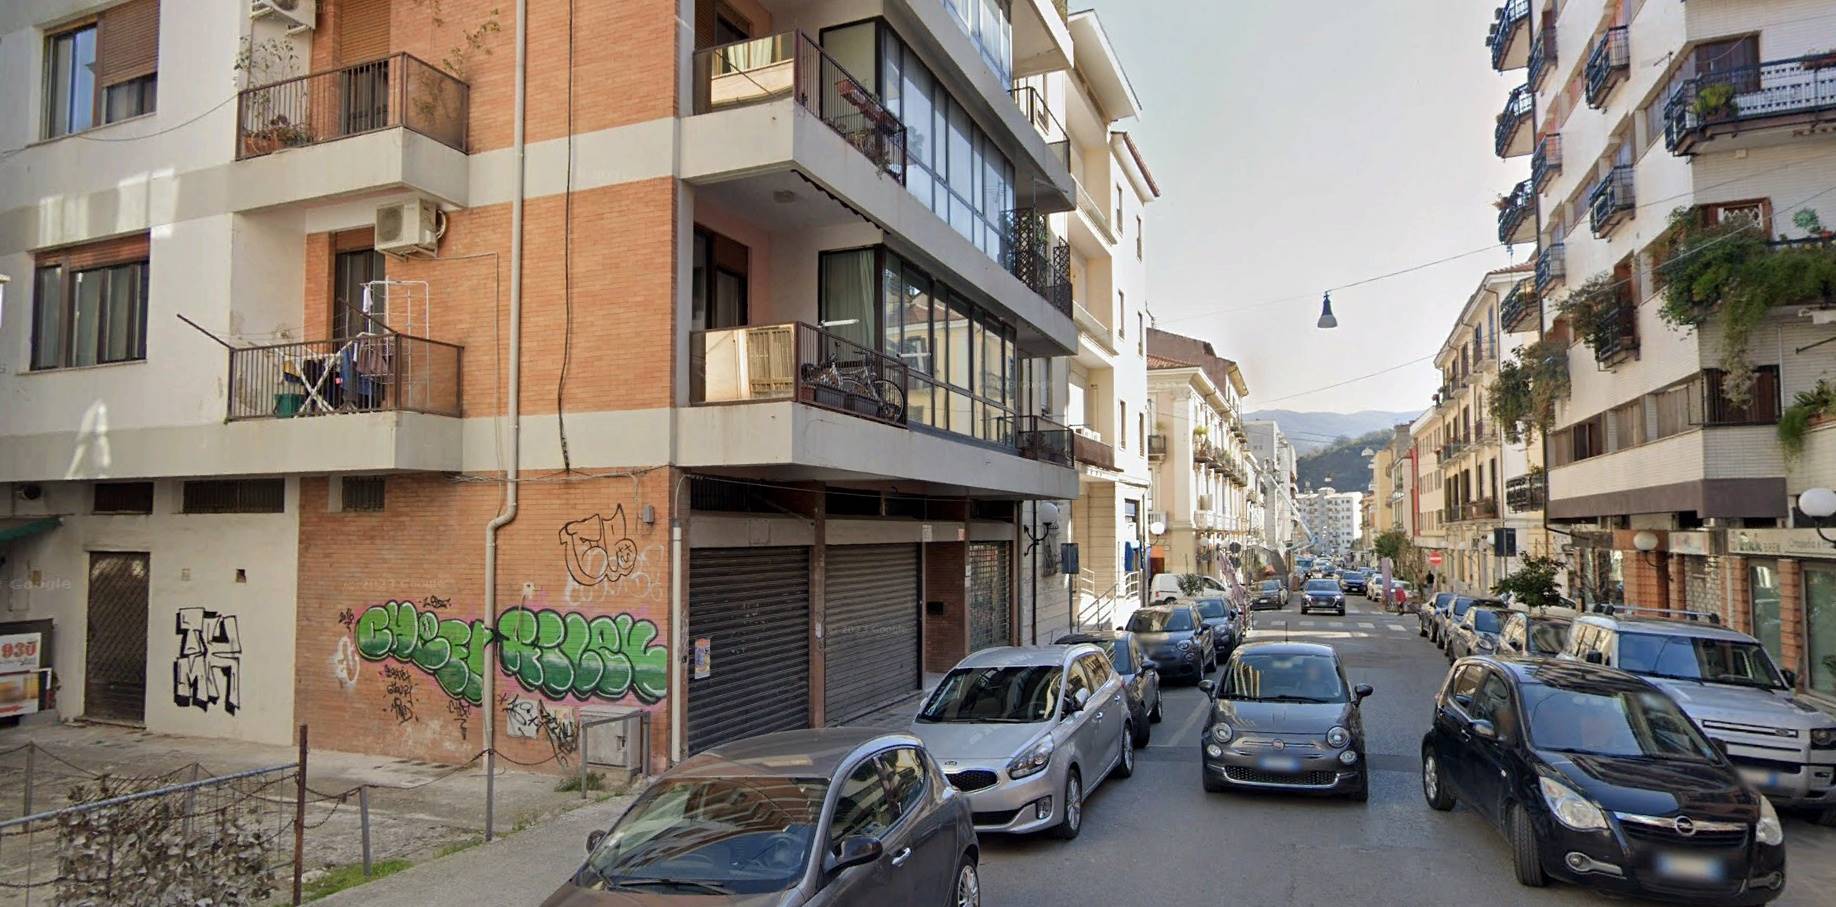 Negozio / Locale in vendita a Cosenza, 1 locali, zona Località: CENTRO CITTÀ, prezzo € 45.000 | PortaleAgenzieImmobiliari.it